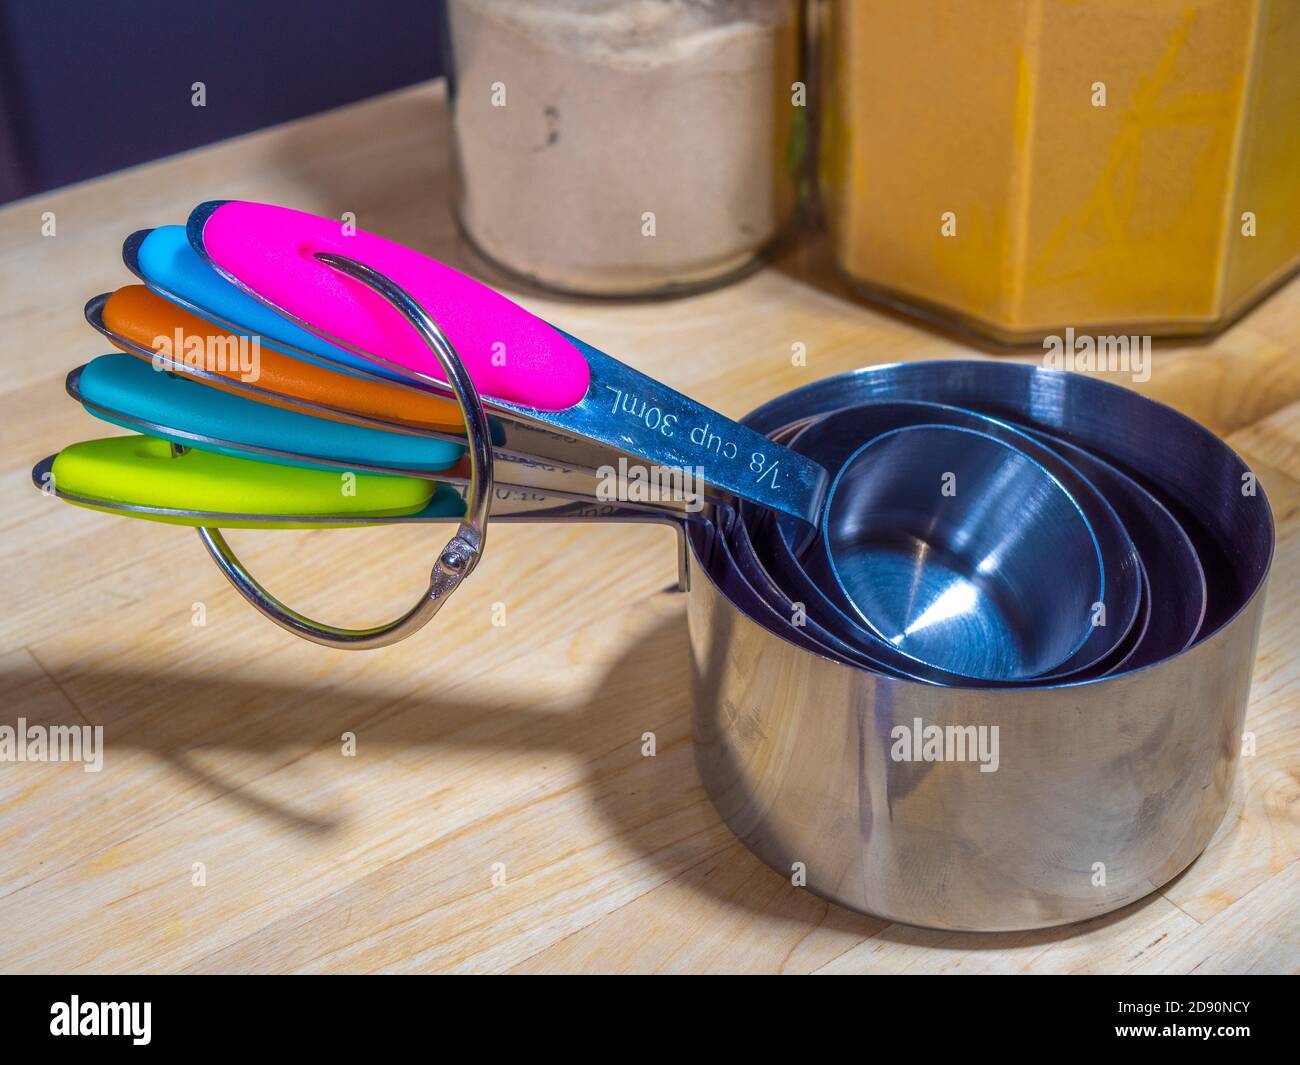 Ein Satz von Messbecher aus Edelstahl unterschiedlicher Größe, mit farbcodierten Griffen, auf einer Arbeitsfläche in der Küche, mit Glasgefäßen mit Zutaten dahinter. Stockfoto